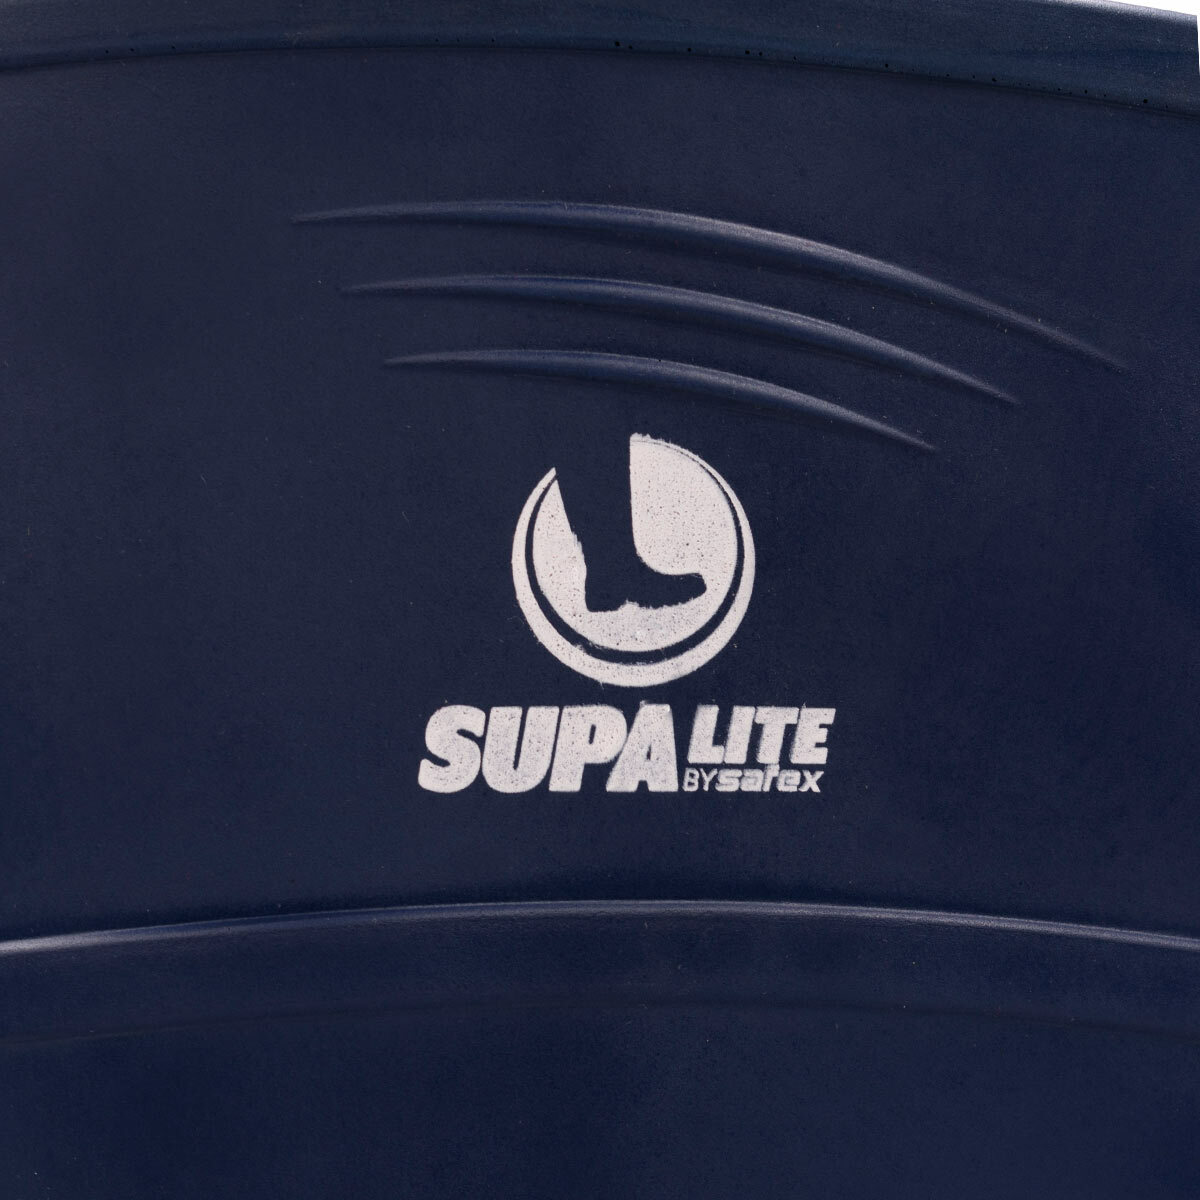 Safex SupaLite PU Gumboots - Blue